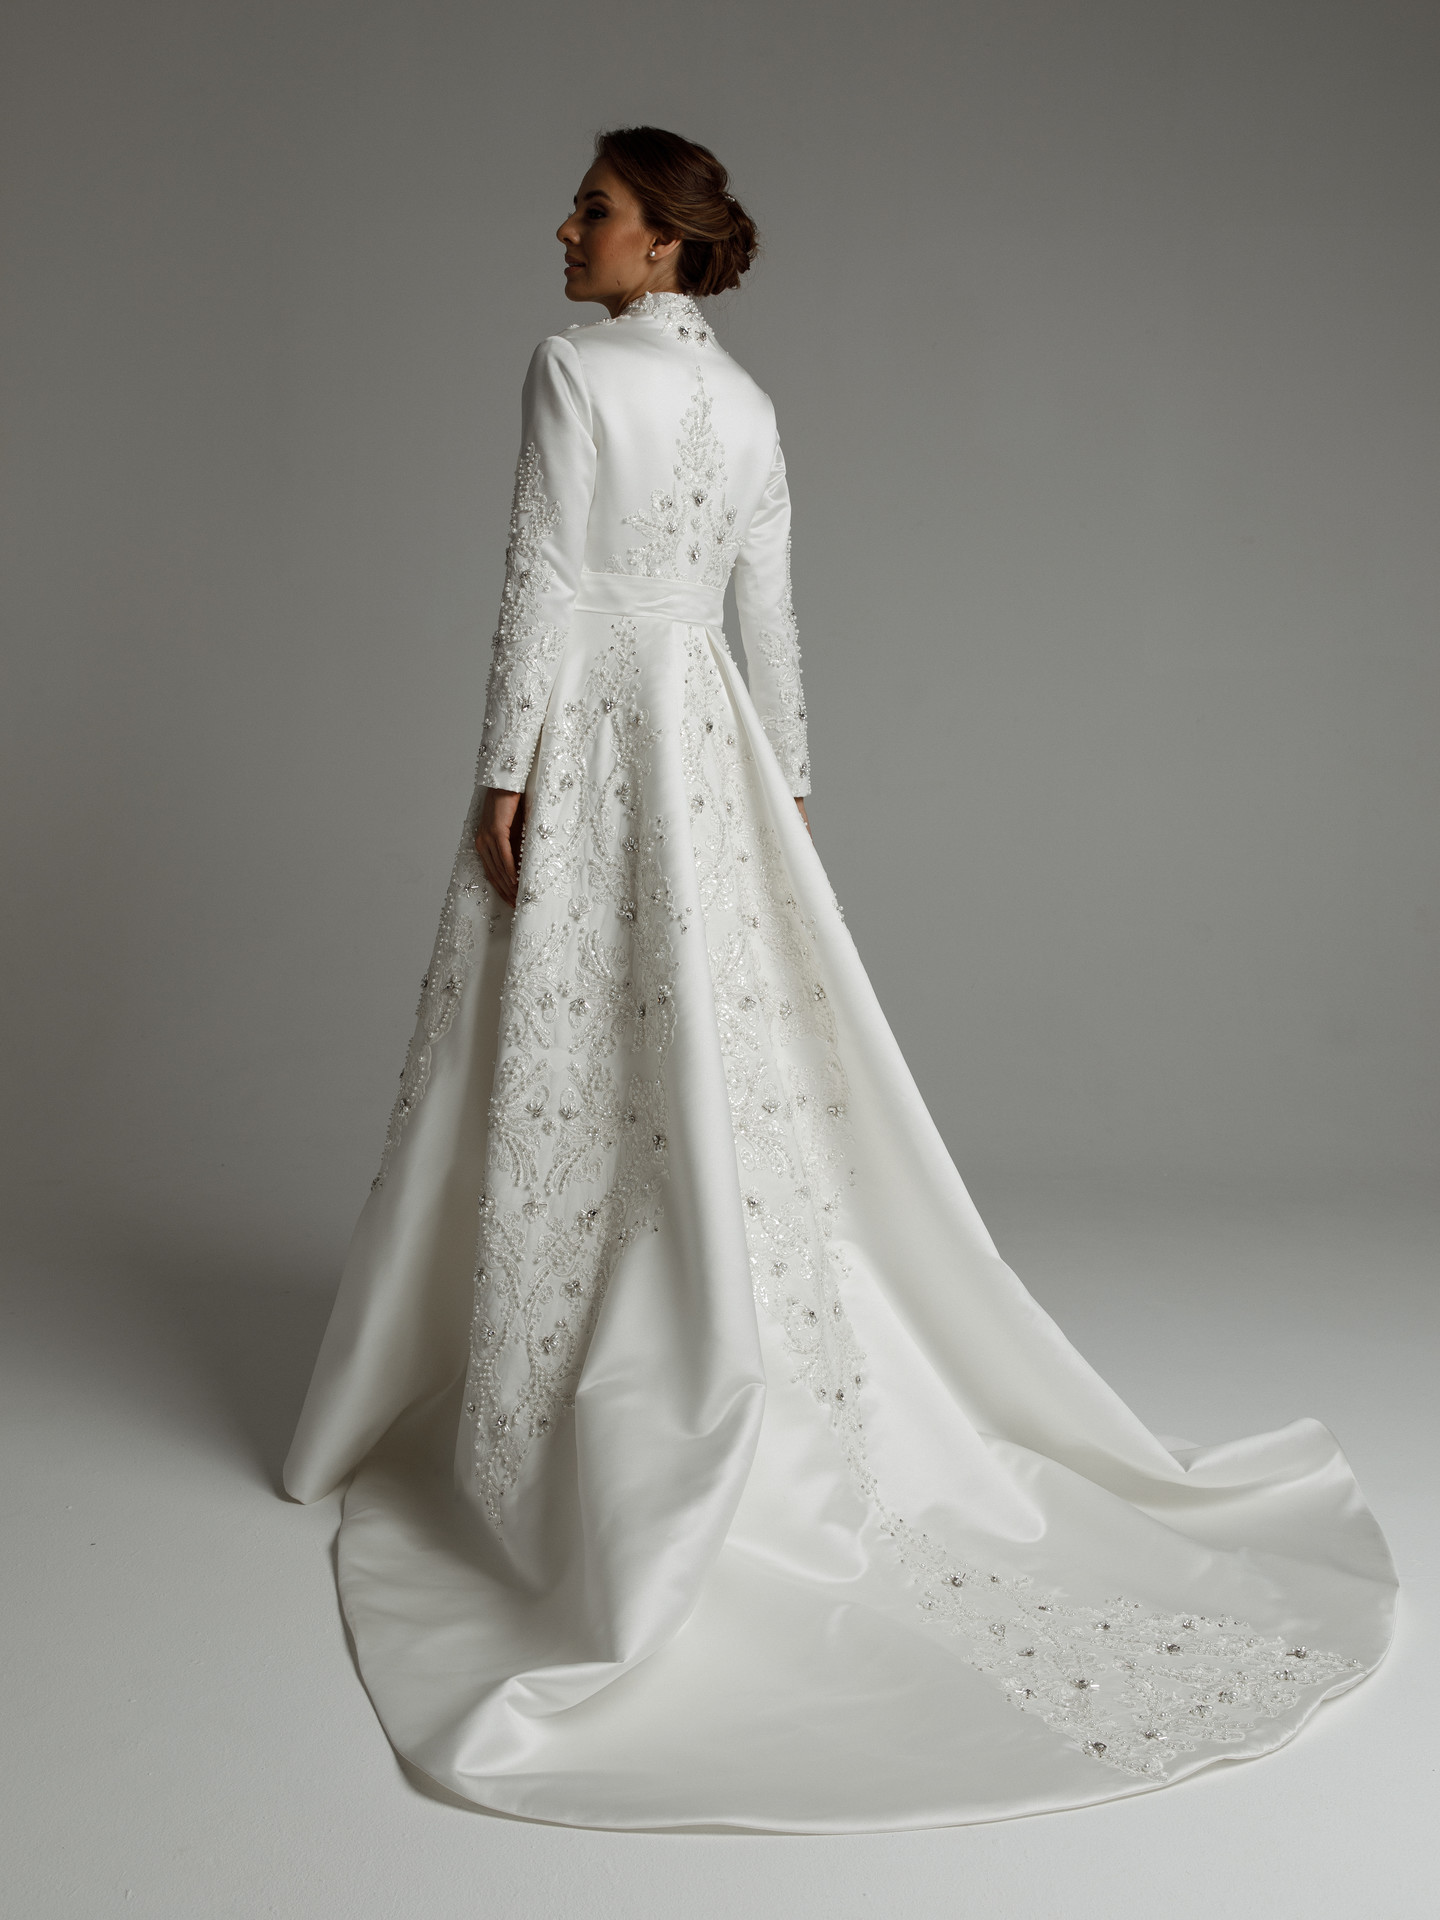 Платье Гертруда, 2021, одежда, платье, свадебное, молочно-белый, атлас, вышивка, А-силуэт, шлейф, рукава, кружево